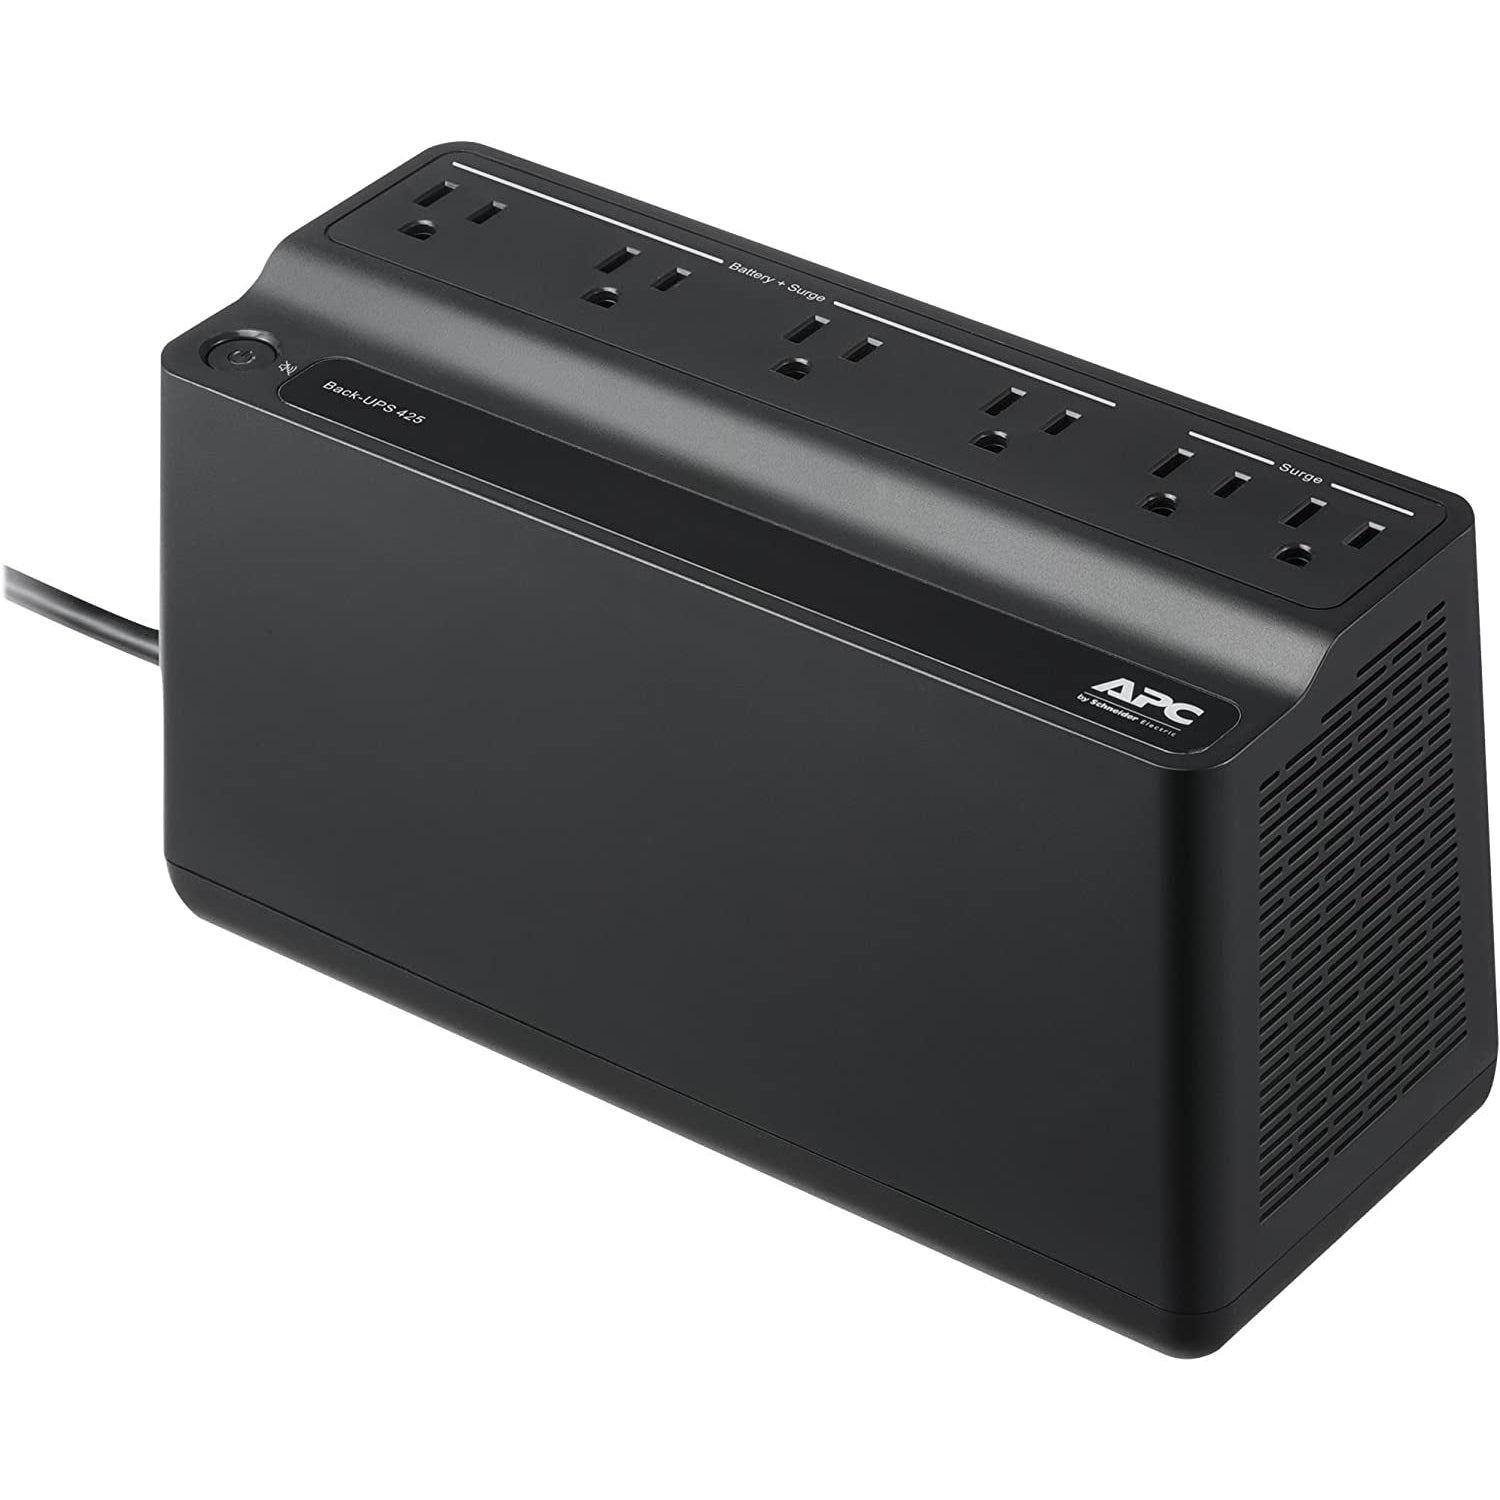 APC UPS Battery Backup Surge Protector, 425VA